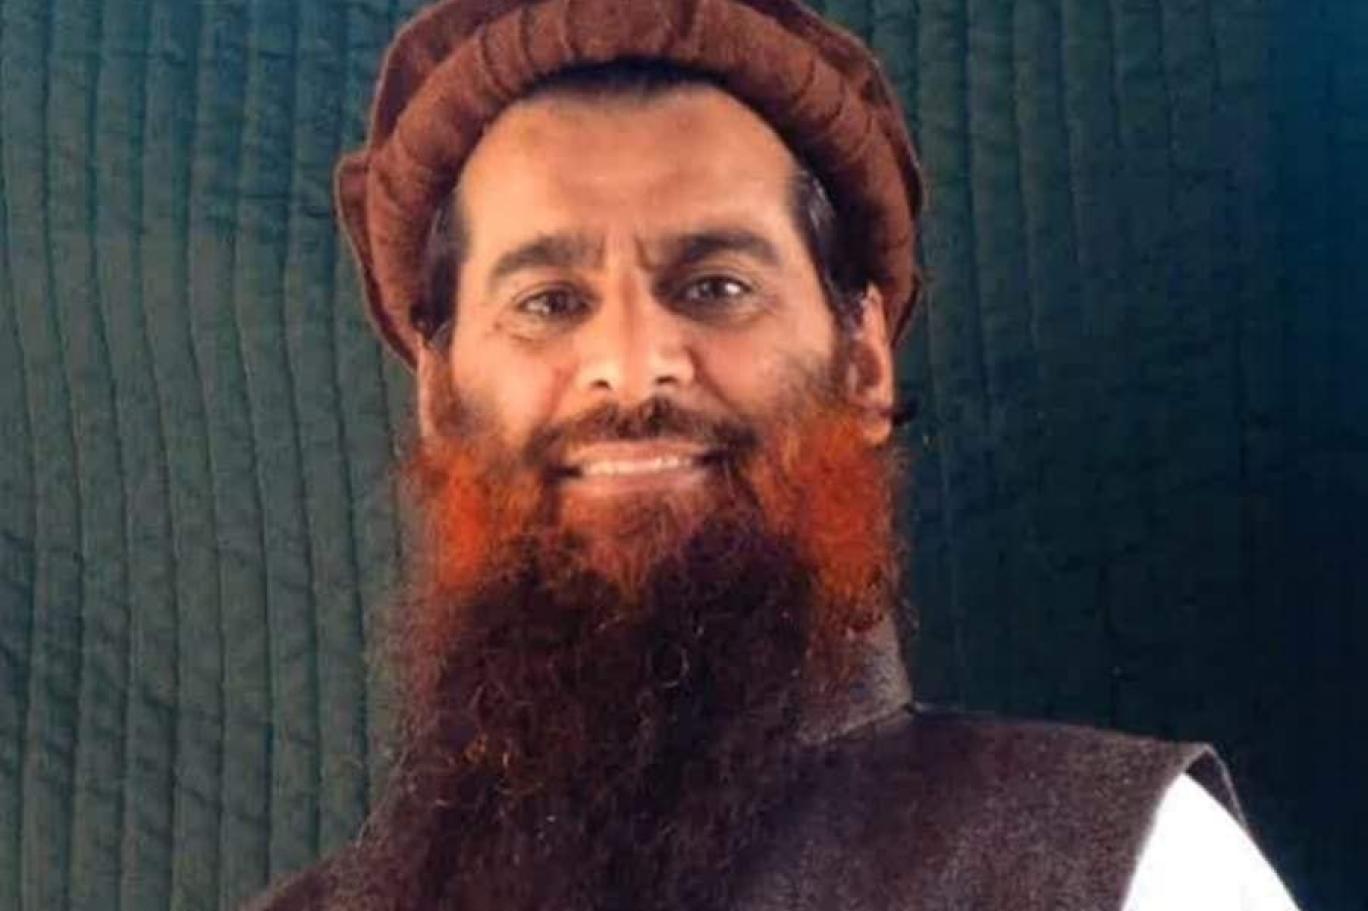 أمريكا تطلق سراح محمد رحيم الأفغاني مساعد أسامة بن لادن بالإضافة لسجين أفغاني آخر مقابل سجين أمريكي لدى طالبان